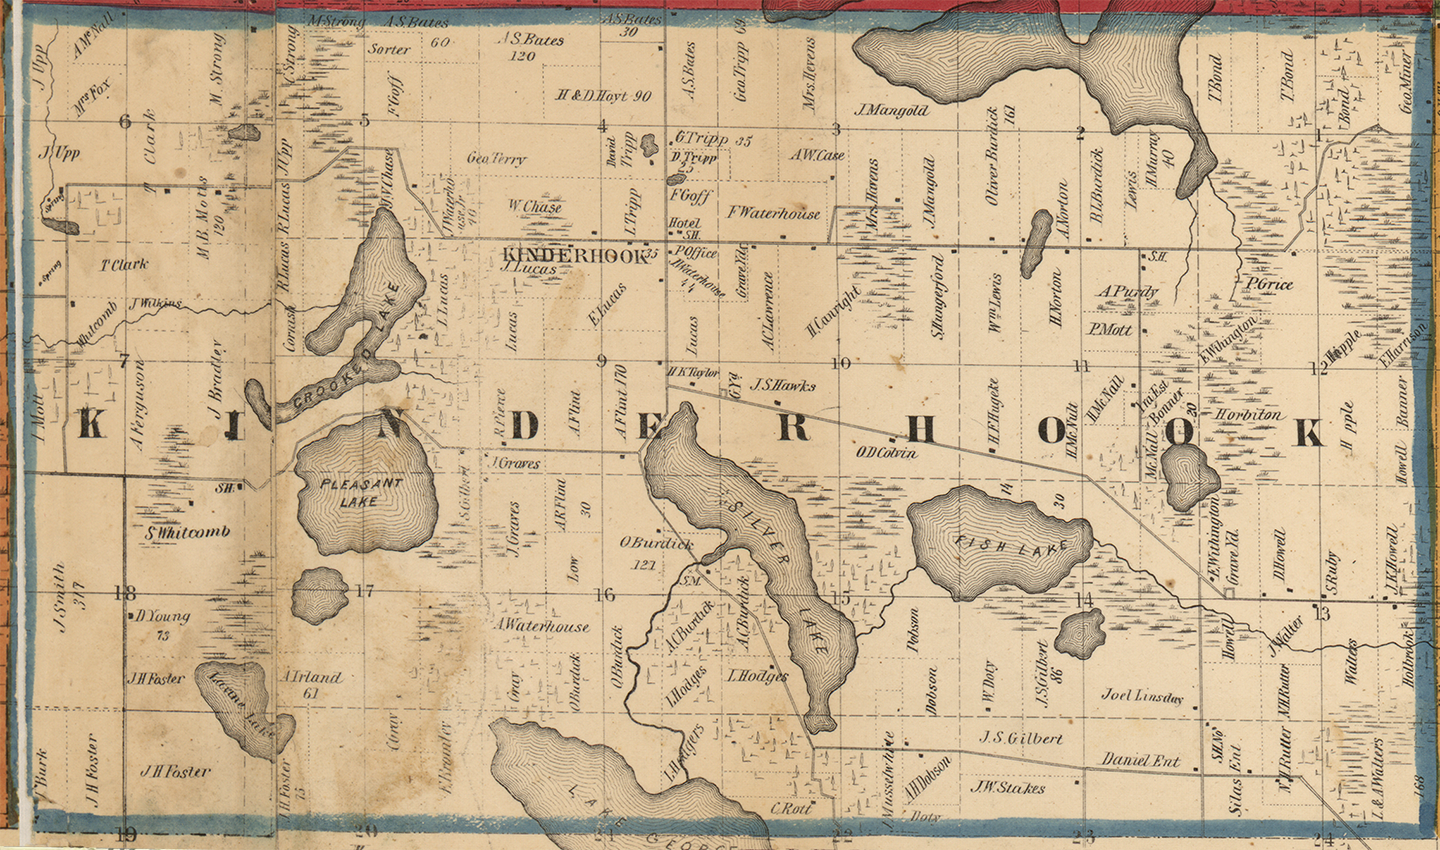 1858 Kinderhook Township, Michigan landownership map